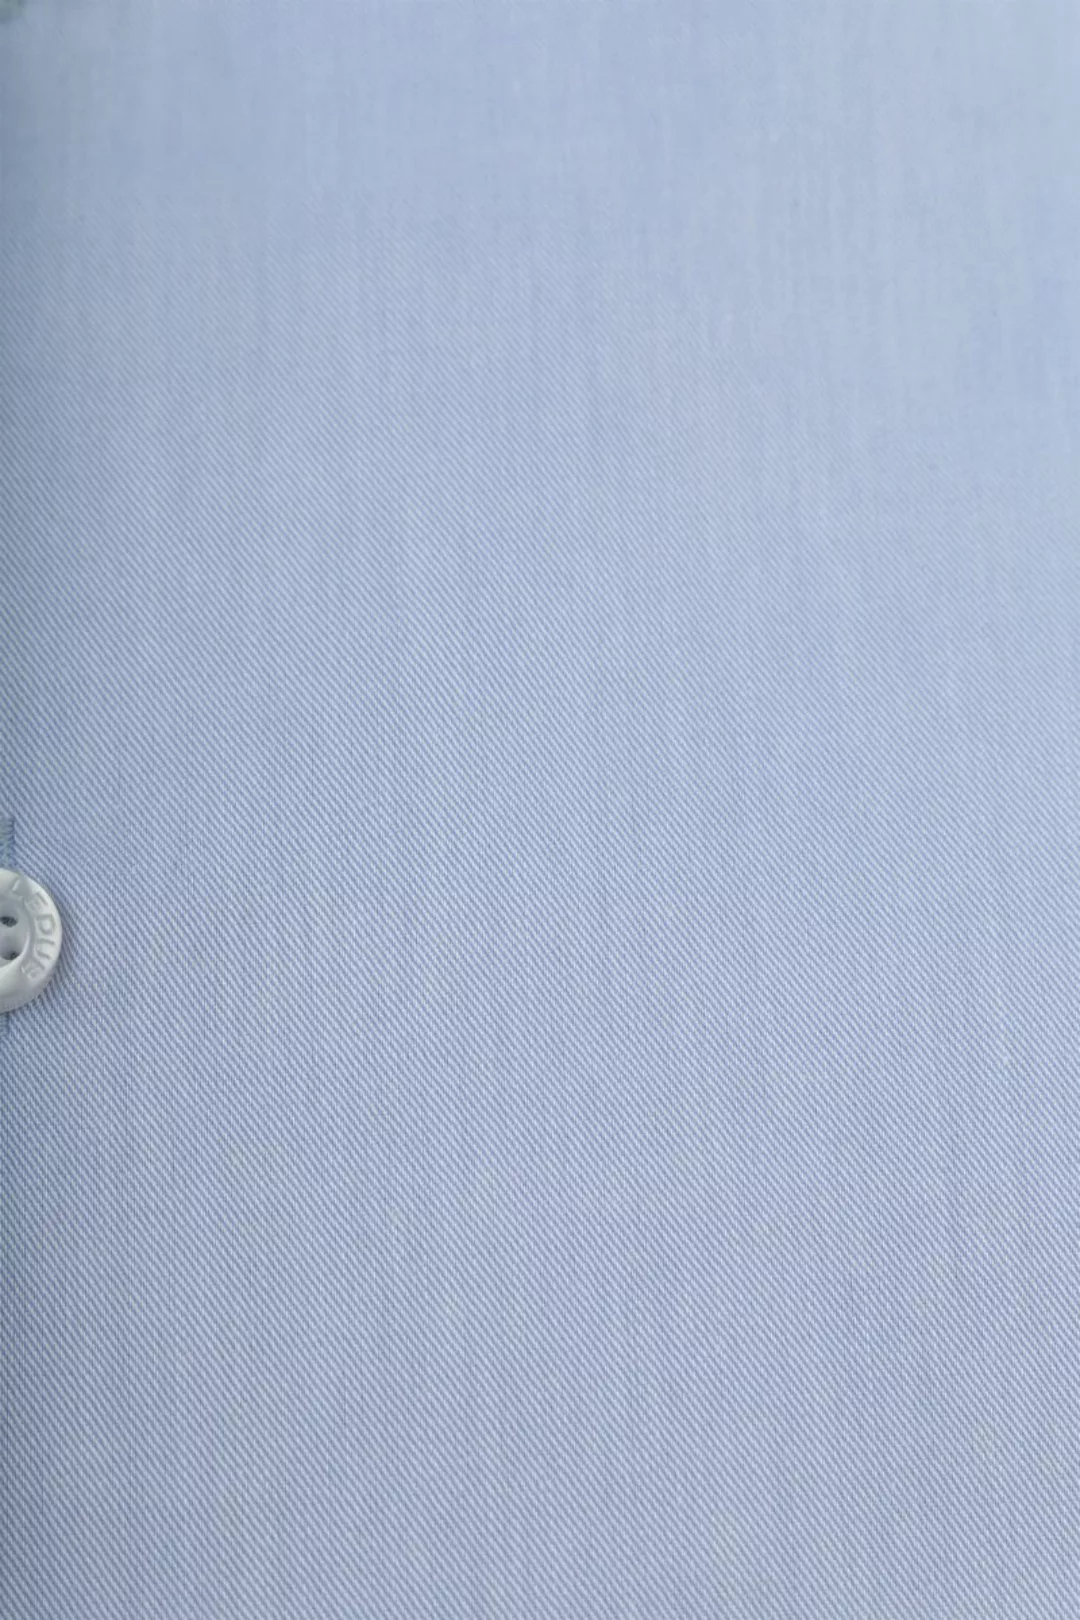 Ledub Hemd Hellblau  - Größe 42 günstig online kaufen